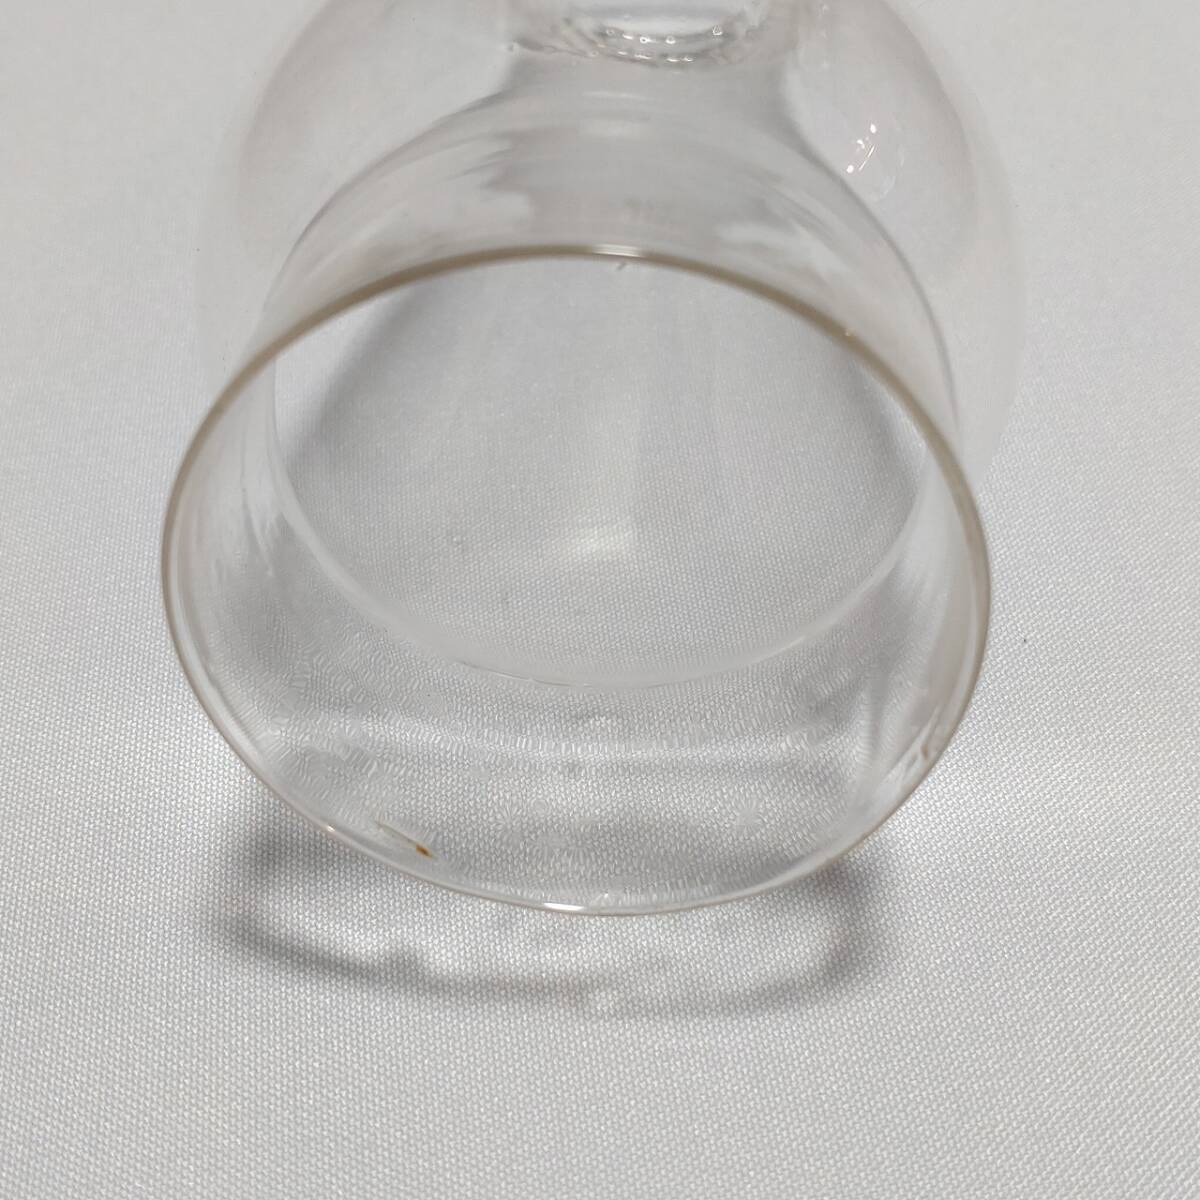 オイルランプのホヤ ガラス製 古硝子 気泡硝子 古道具 レトロ 直径約70㎜ 高さ約148㎜ 口径（内径）上部約28㎜ 下部約54㎜ 【3460】_画像4